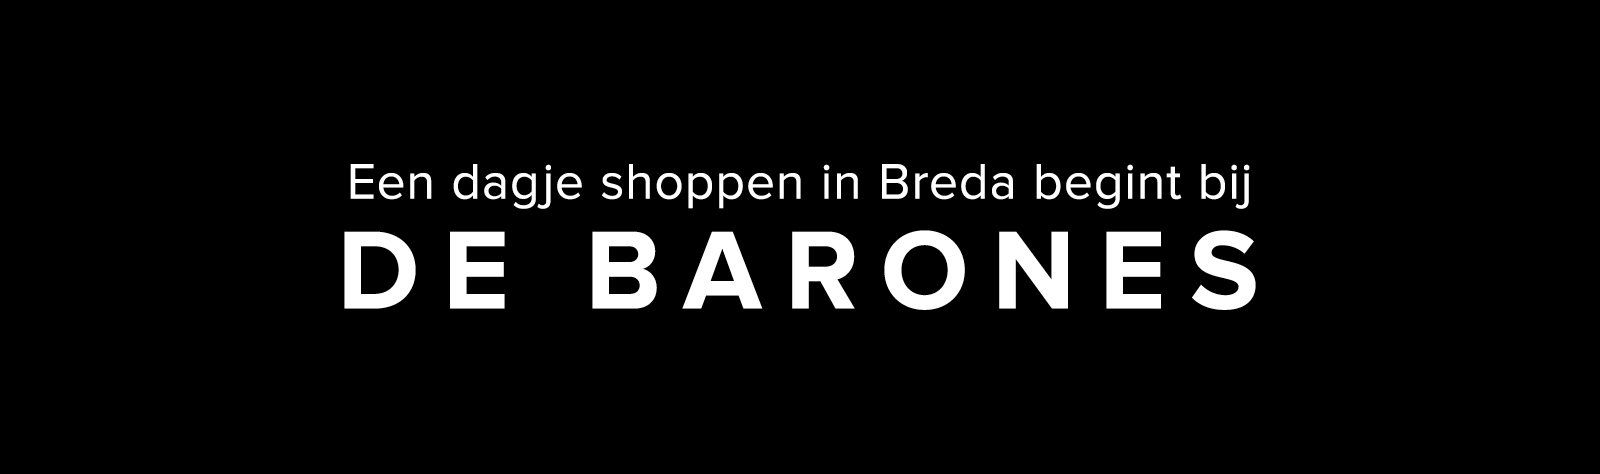 Shoppen in Breda - Barones winkelcentrum